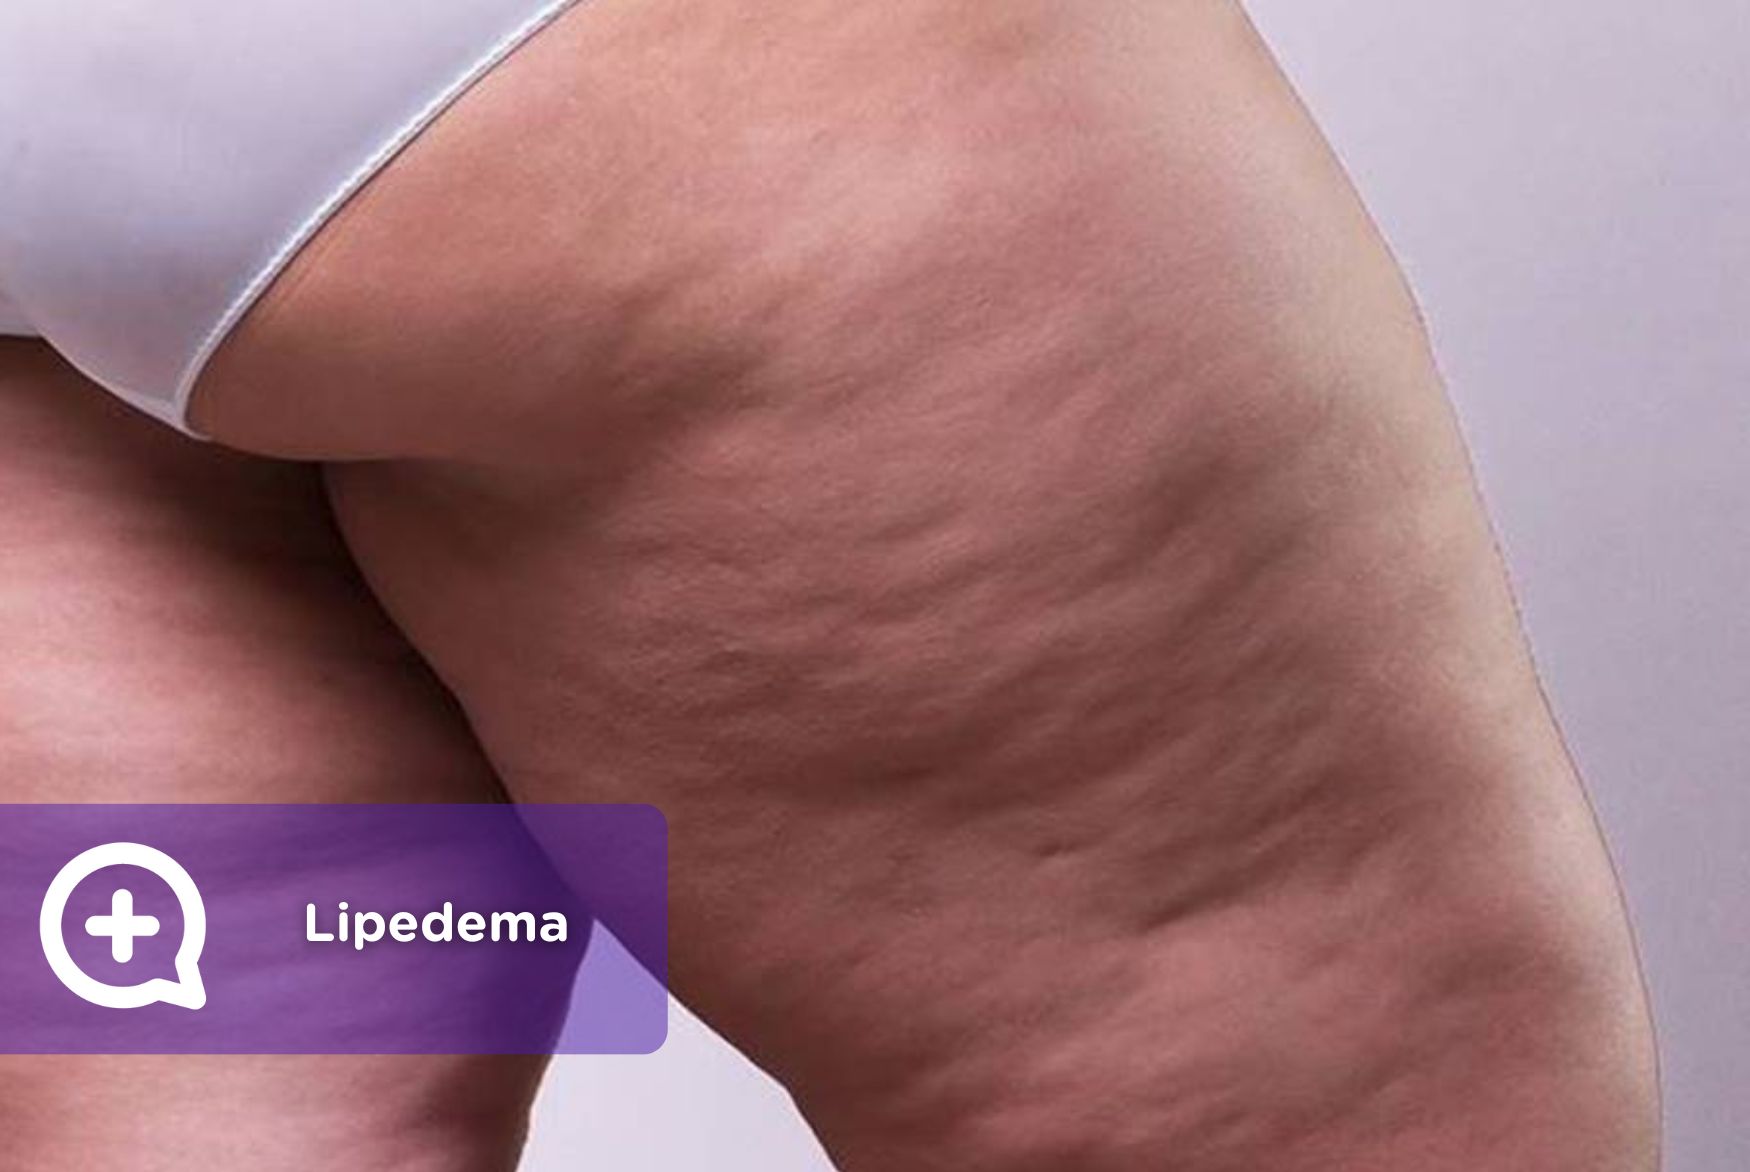 Desvendando o Lipedema: diagnóstico e tratamento de uma doença